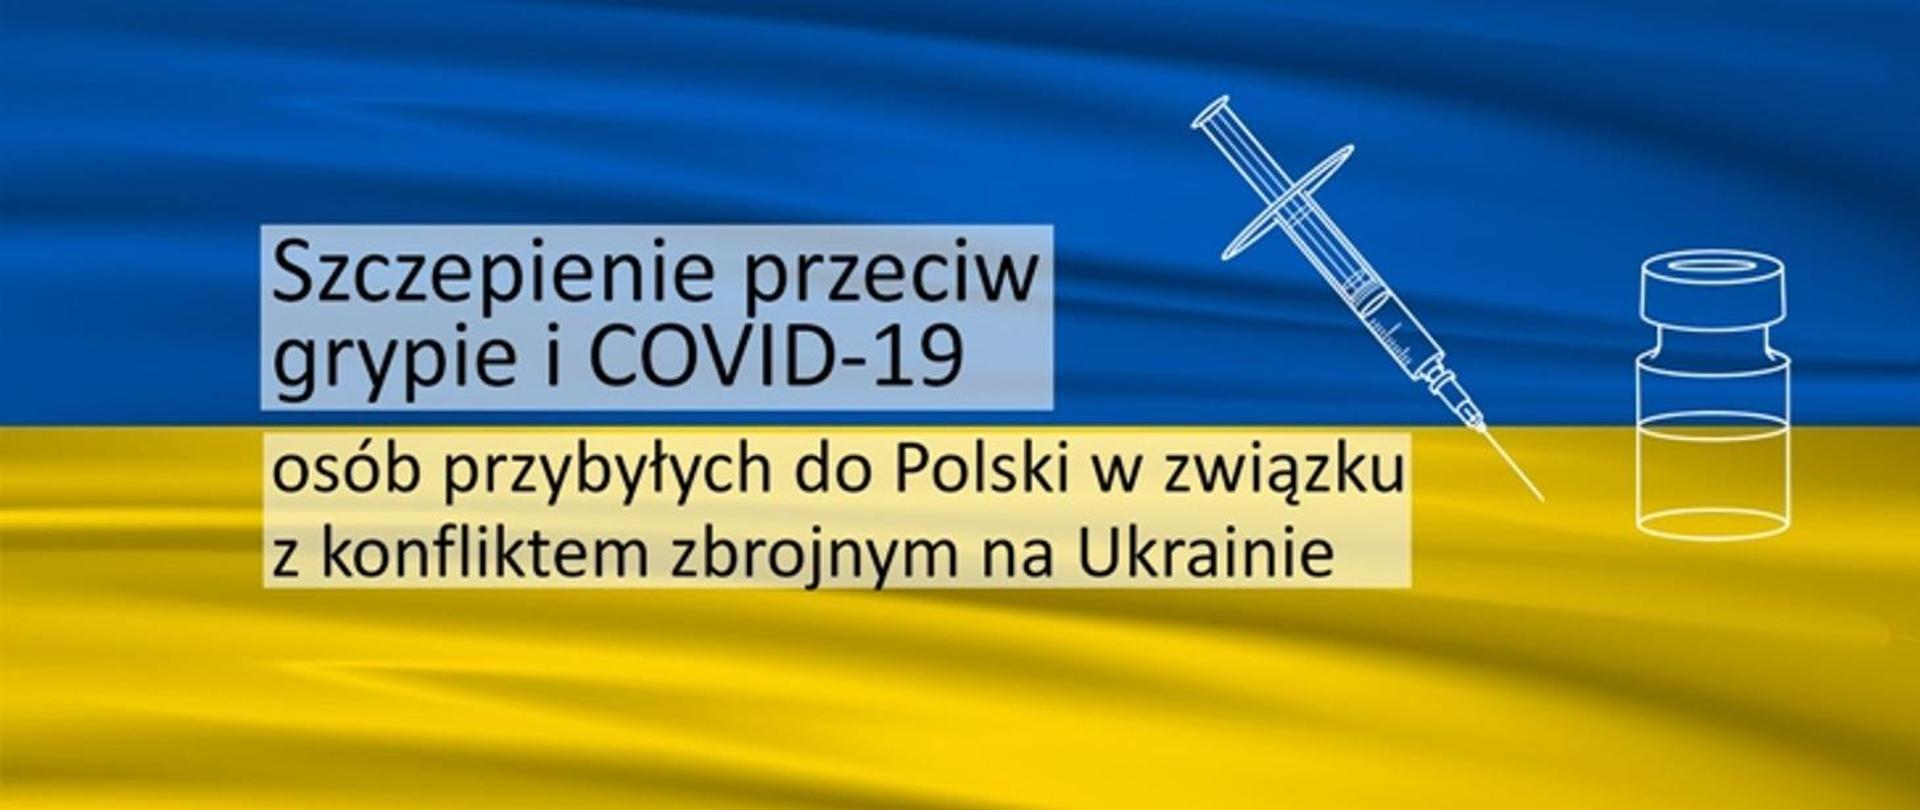 Na tle niebiesko-żółtej flagi Ukrainy napis: Szczepienie przeciw grypie i COVID-19 osób przybyłych do Polski w związku z konfliktem zbrojnym na Ukrainie oraz biała strzykawka i fiolka